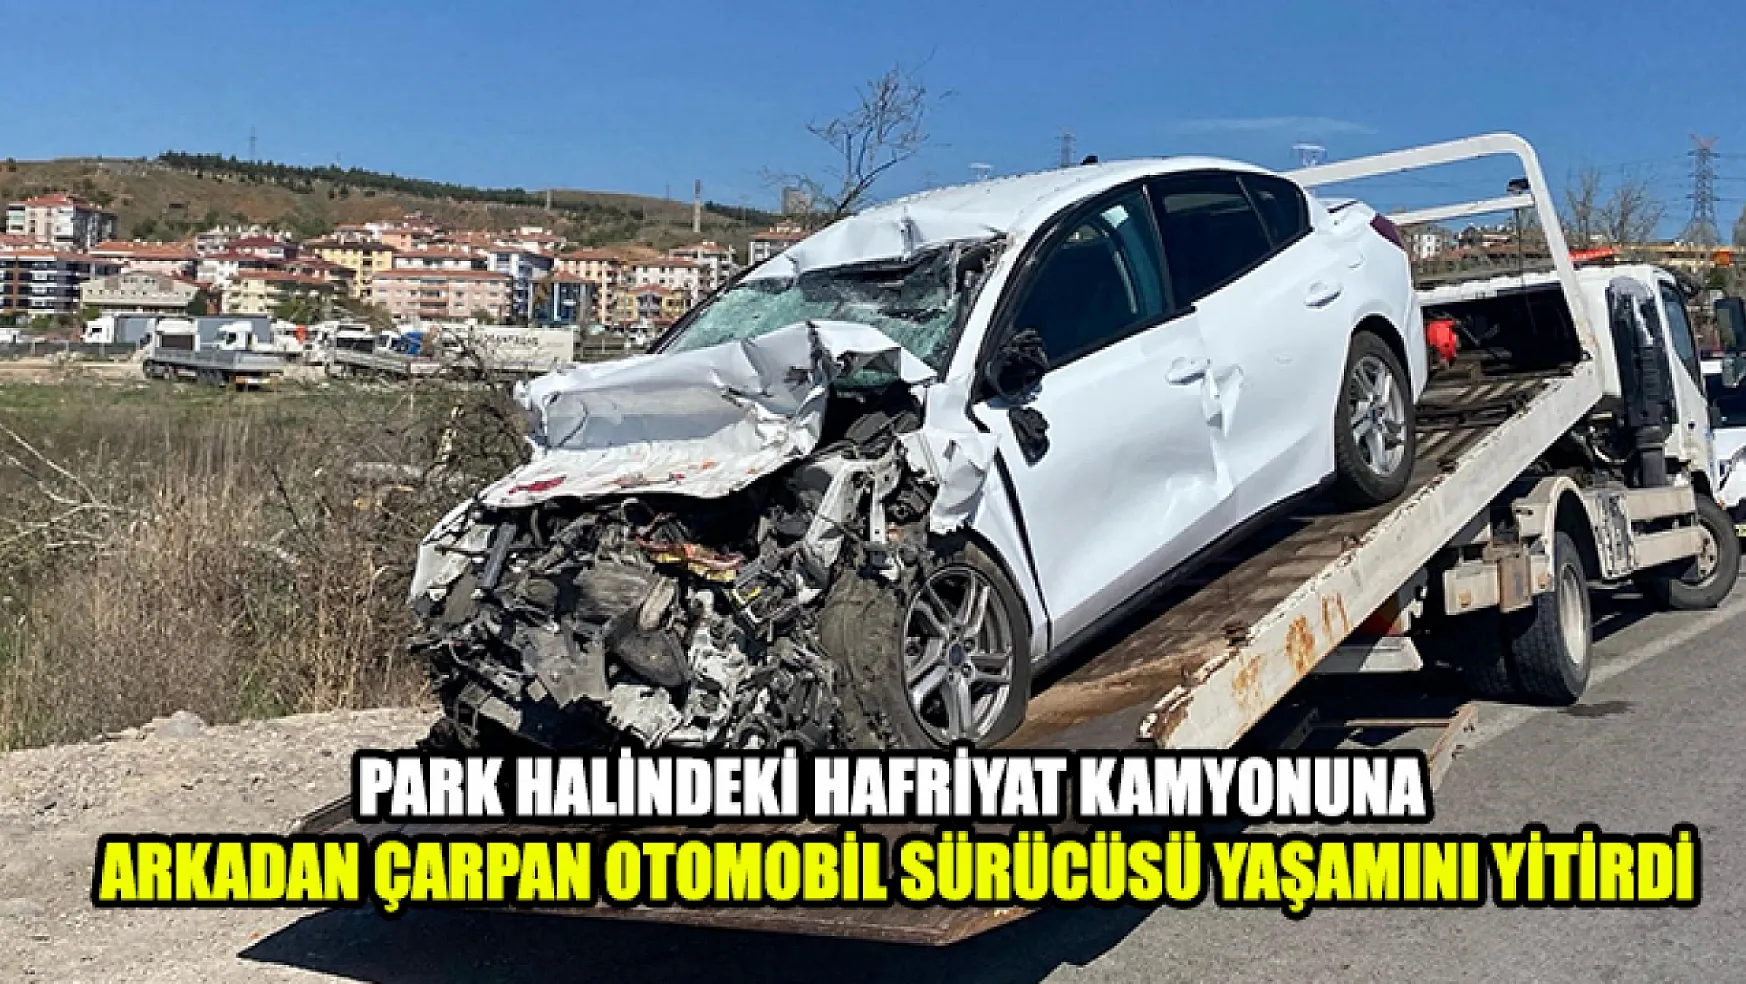 Park Halindeki Hafriyat Kamyonuna Arkadan Çarpan Otomobil Sürücüsü Yaşamını Yitirdi